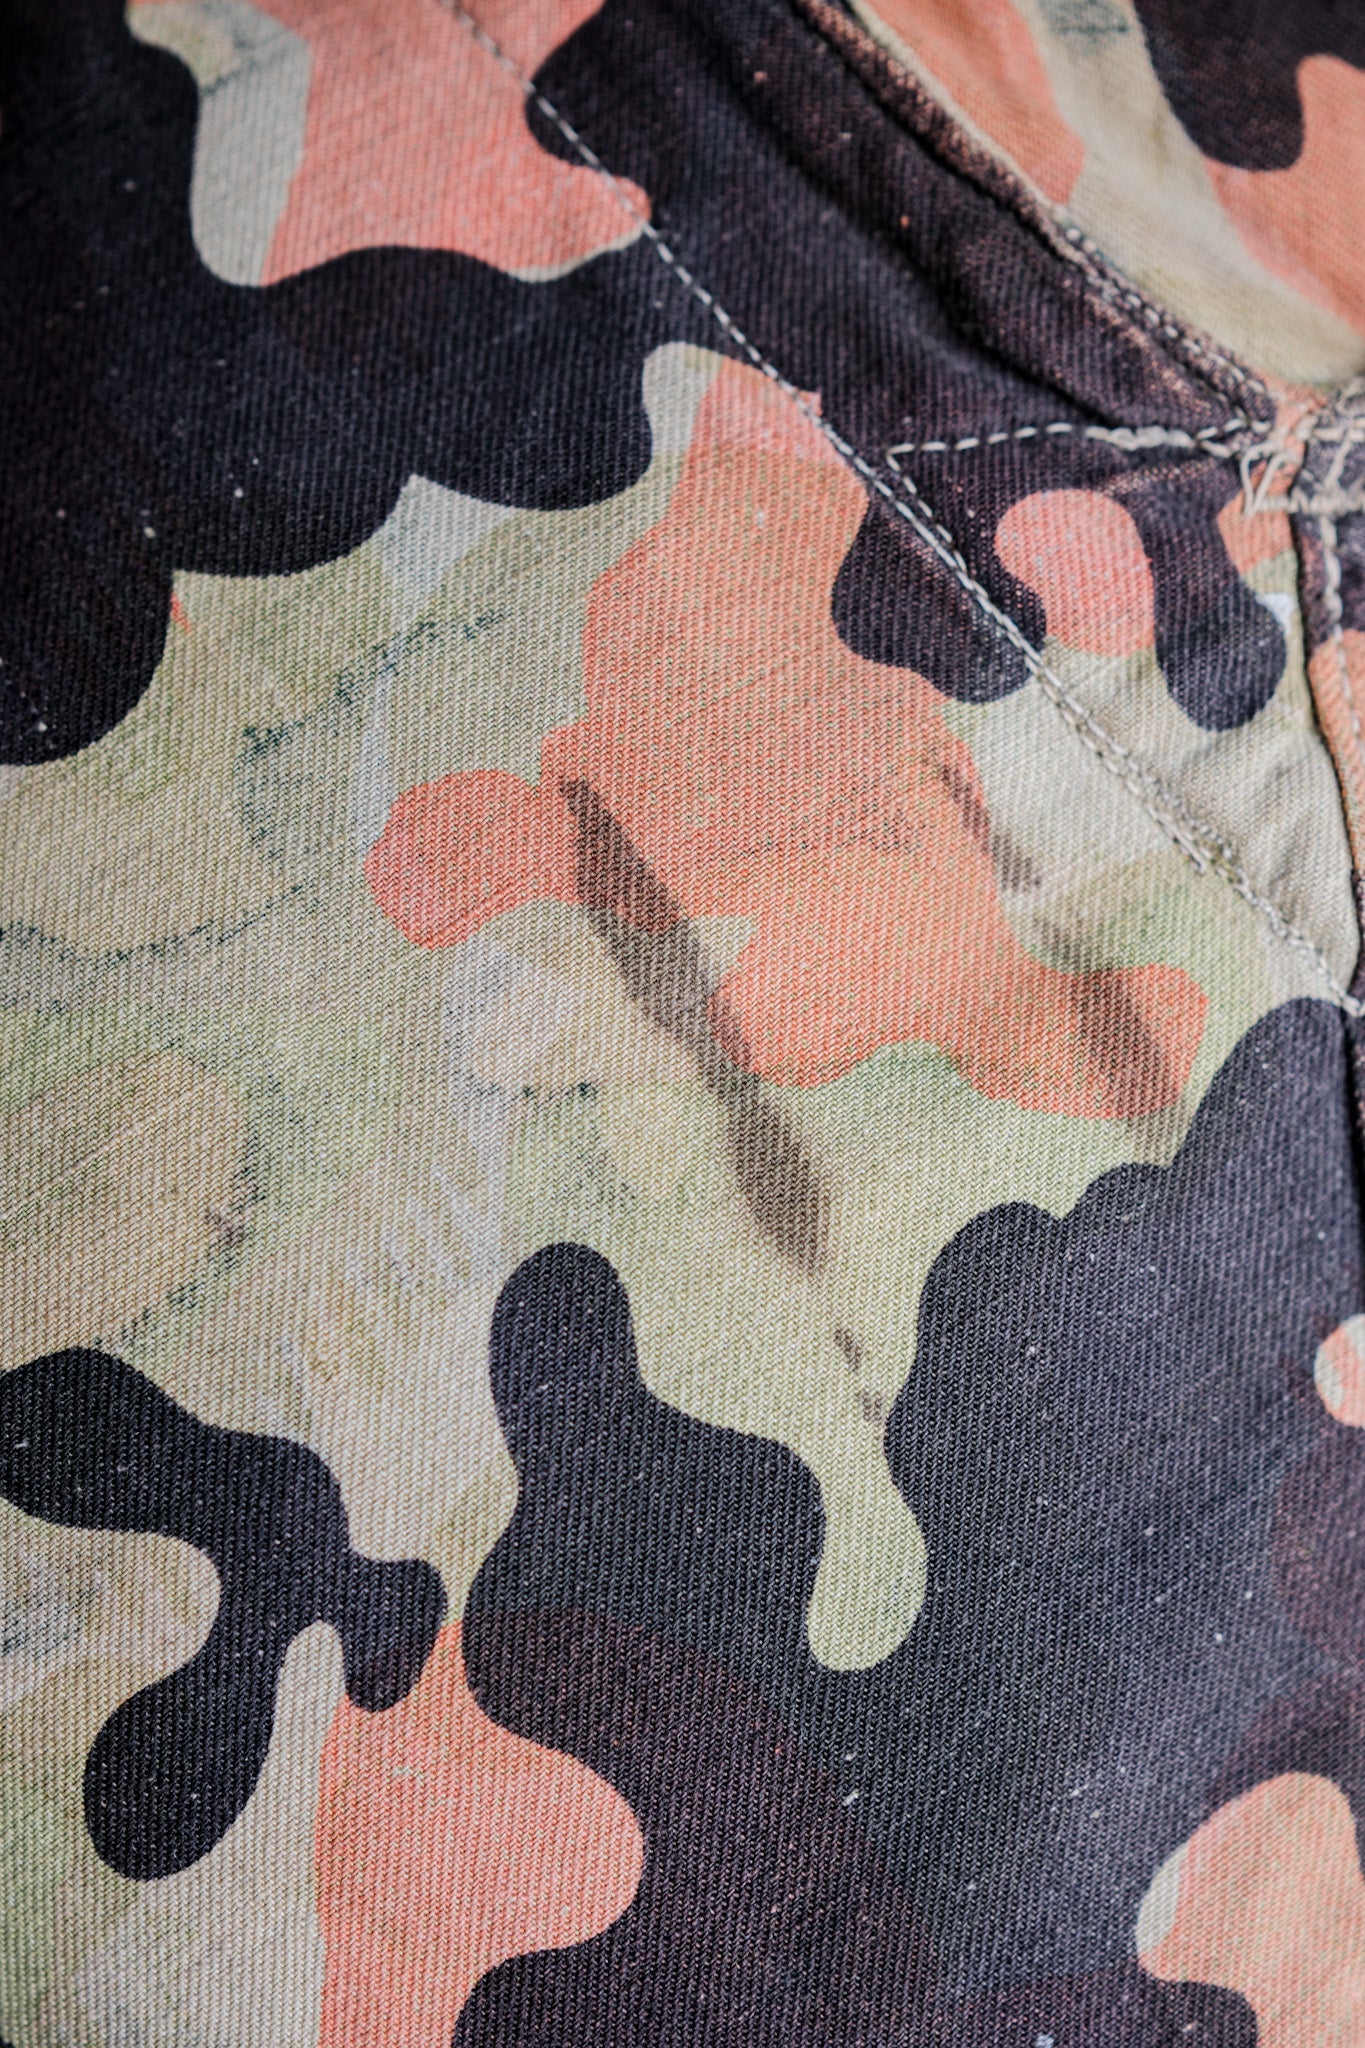 [~ 50's] กองทัพเชคโกสโลวะเกียลายพรางอำพรางผ้าขี้ริ้วย้อนกลับได้